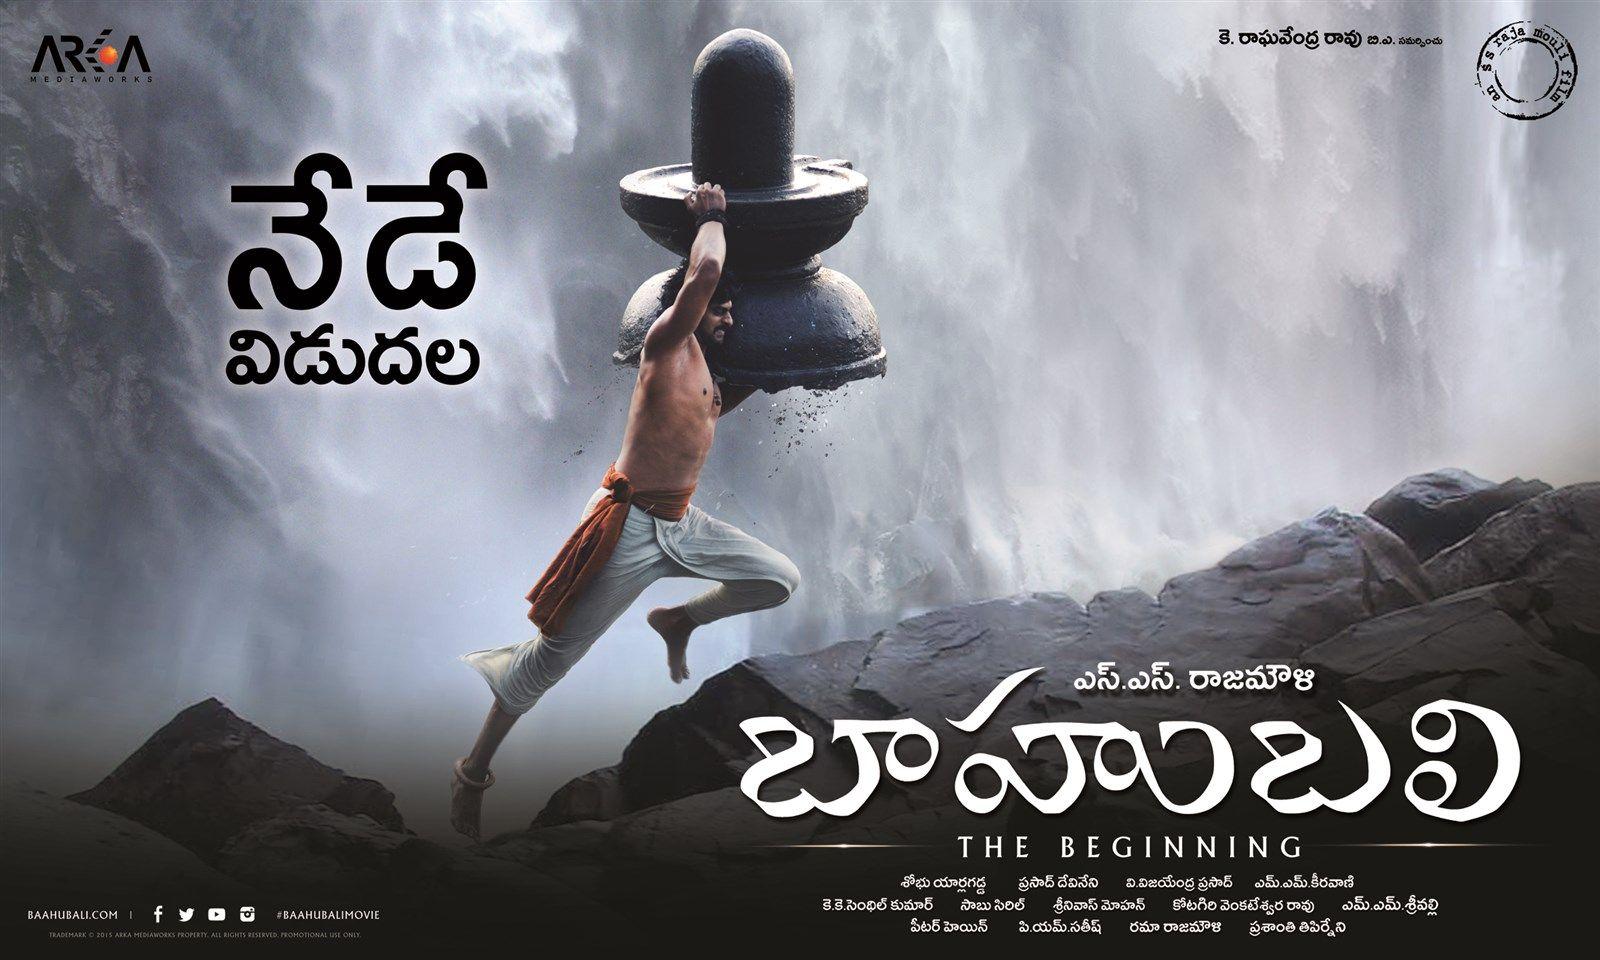 Baahubali movie release wallpaper